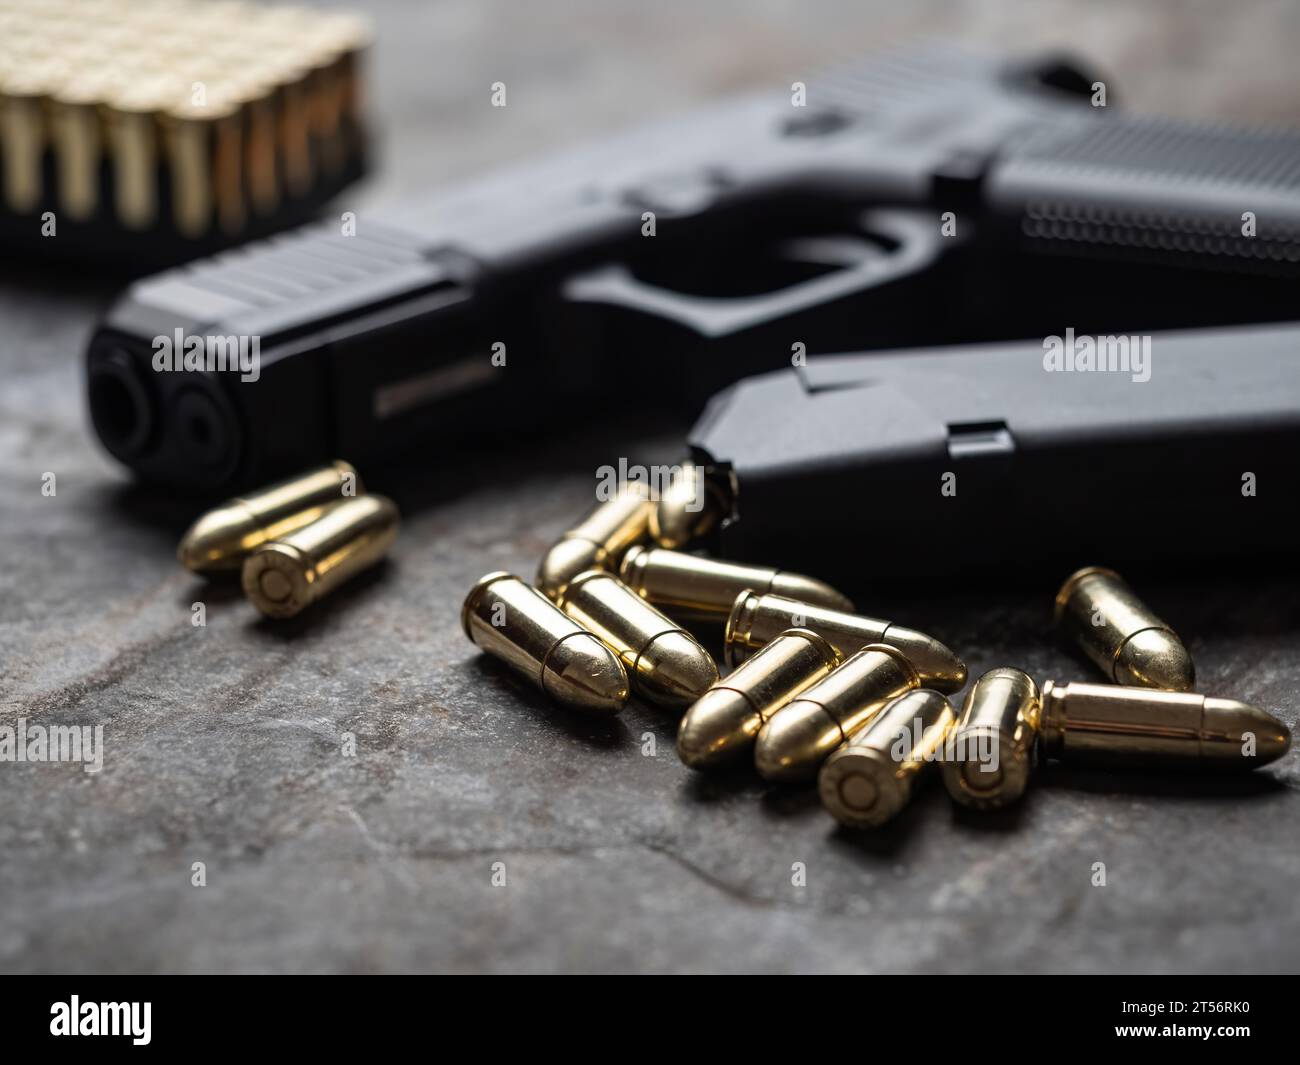 Comprar Pistola Detective Negra - Pistolas y Metralletas